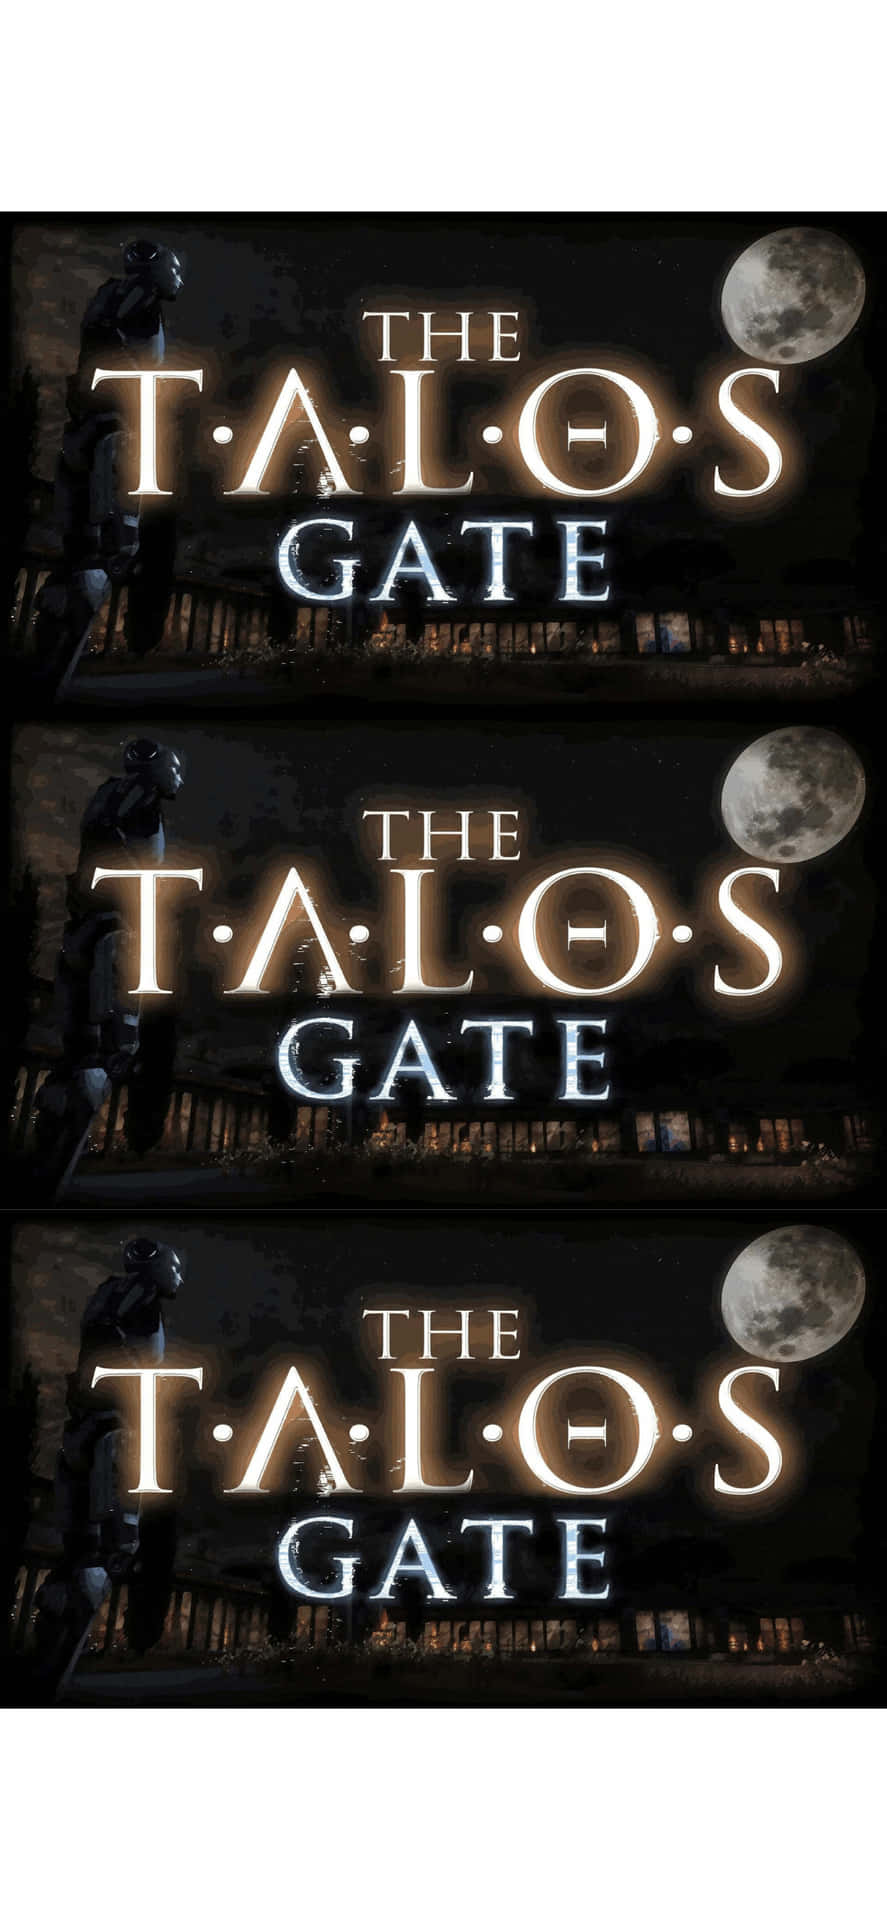 The Talos Gate - Talos Gate - Talos Gate - Talos Gate - Ta